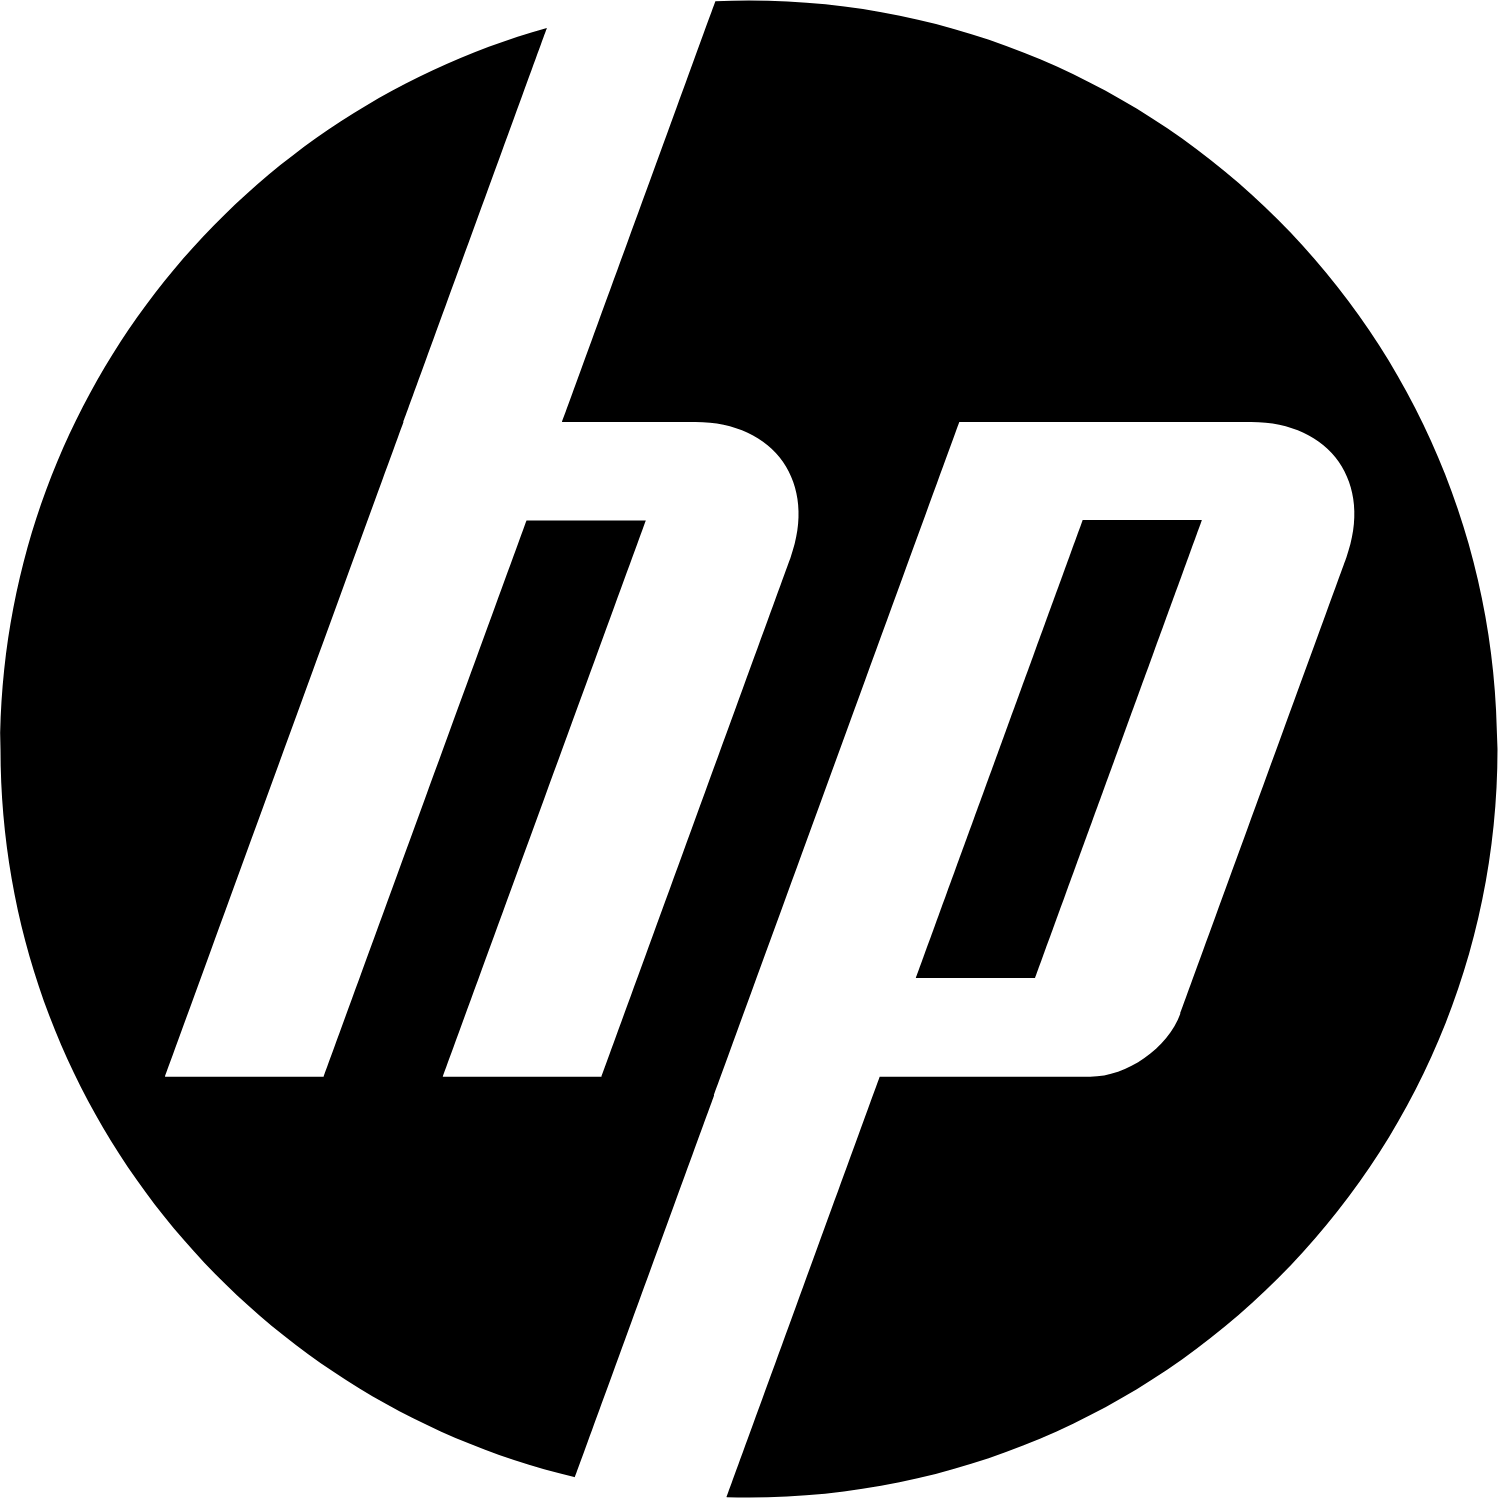 HP logo (PNG transparent)